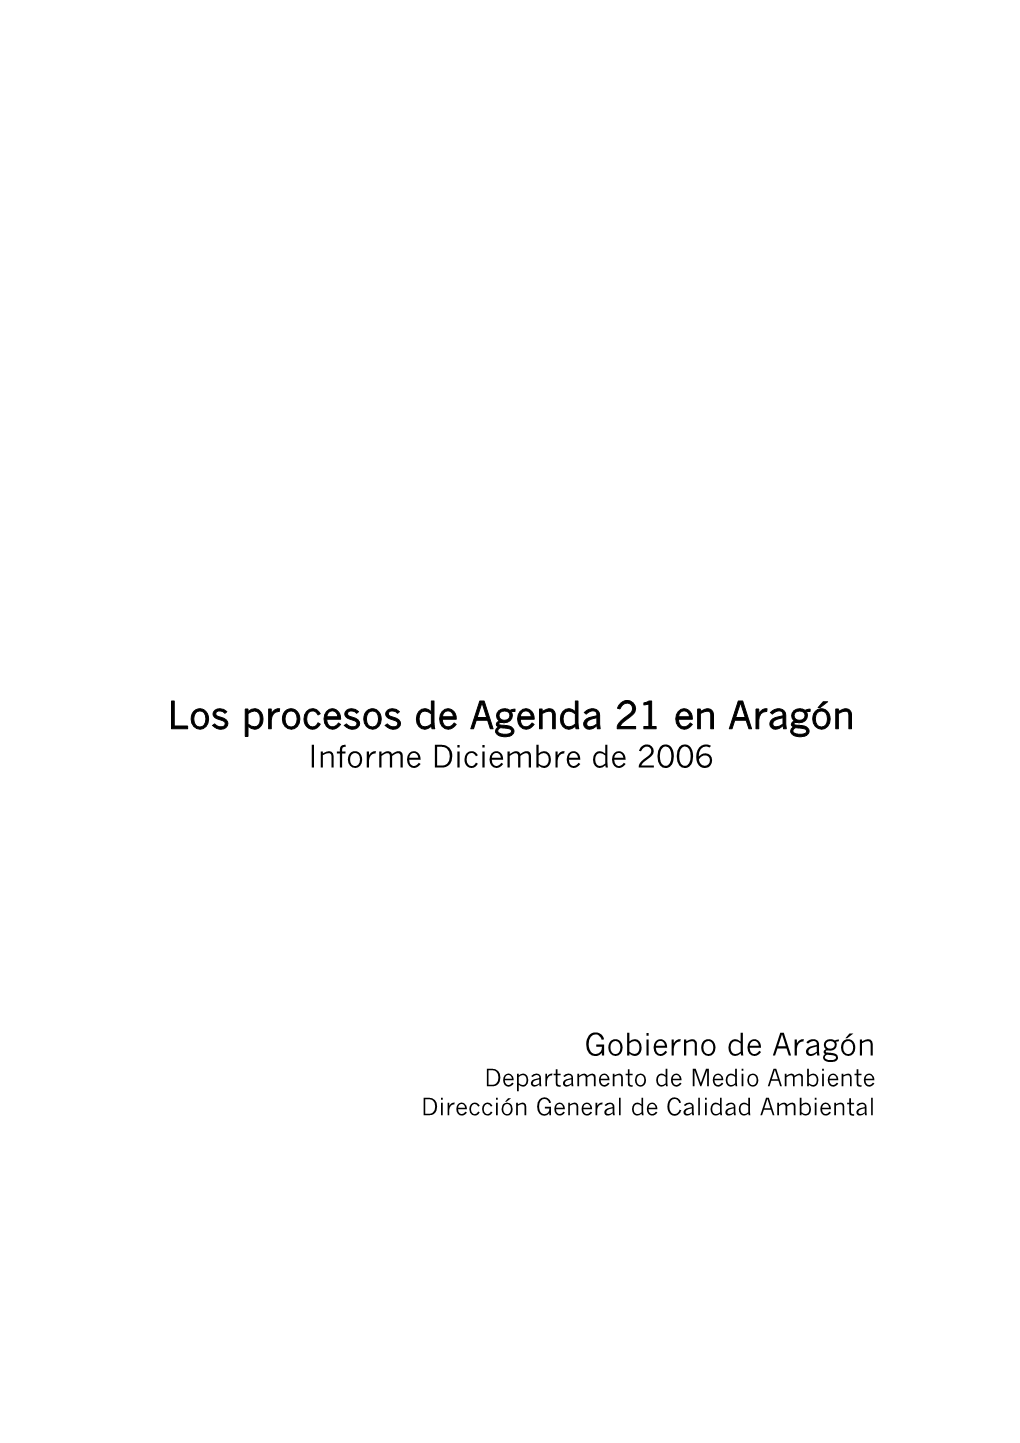 Los Procesos De Agenda 21 En Aragón Informe Diciembre De 2006